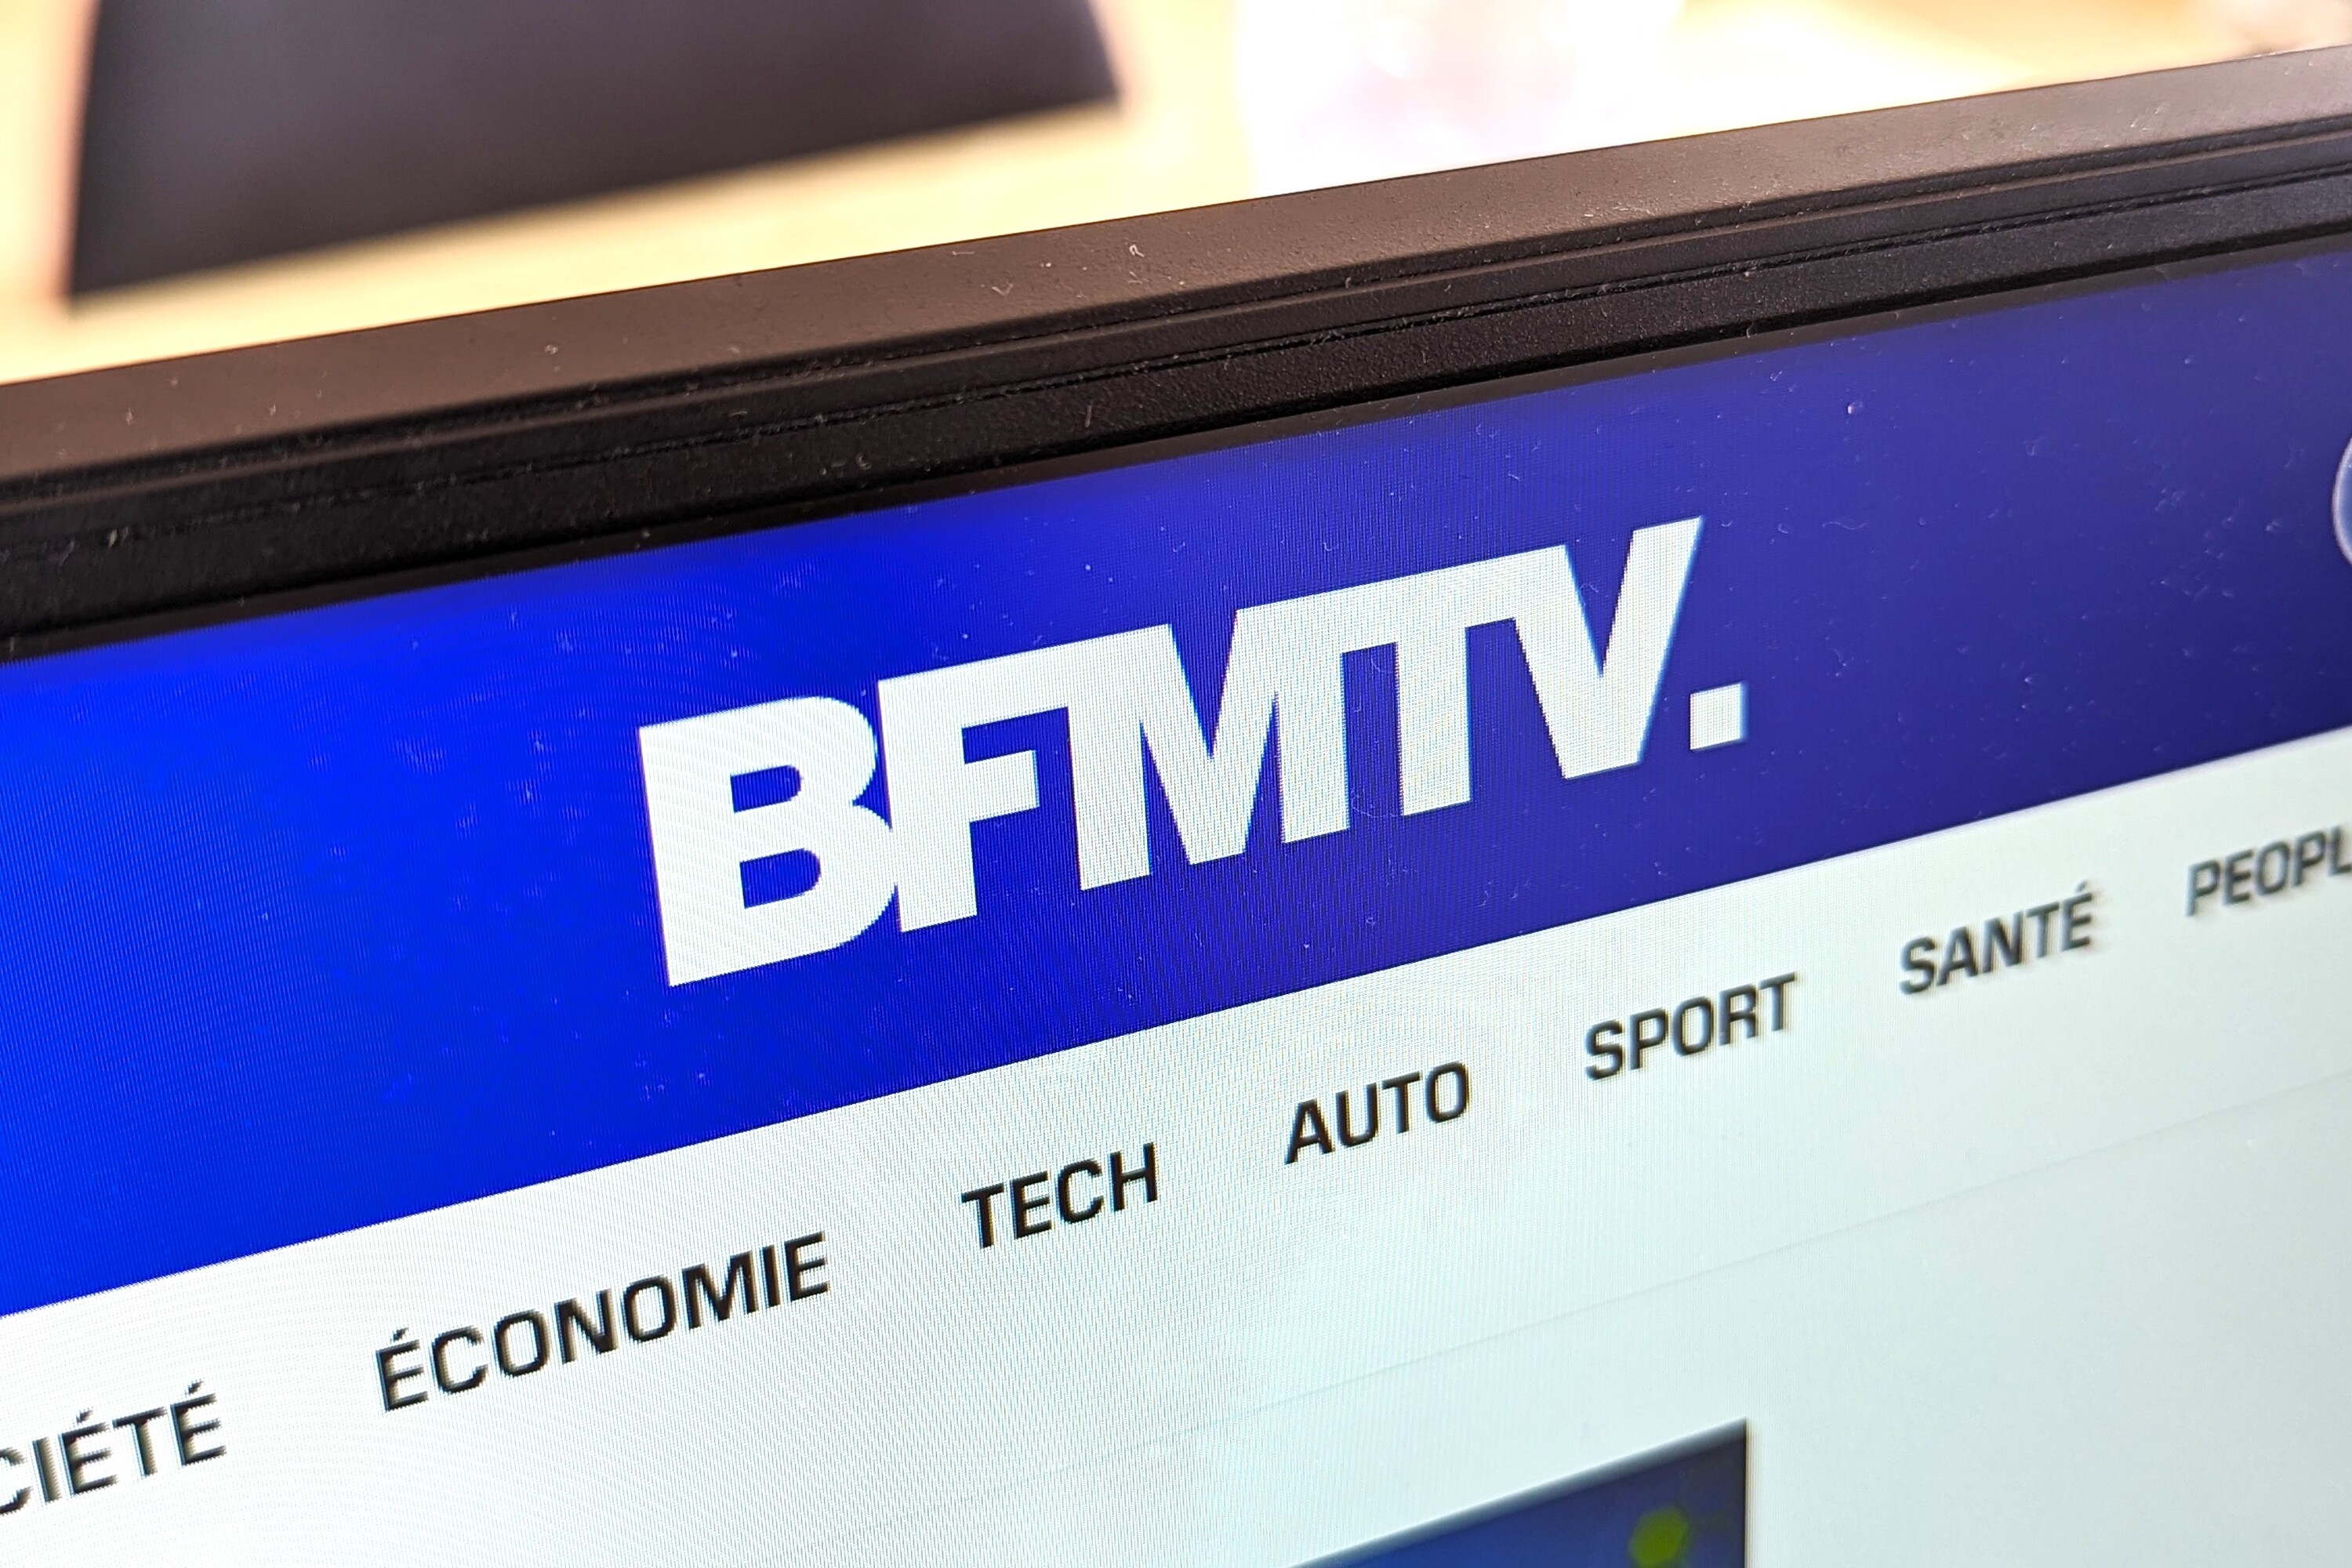 BFMTV et RMC rachetés par le géant français des armateurs, qui signe la fin de l'empire Altice (SFR) de Patrick Drahi